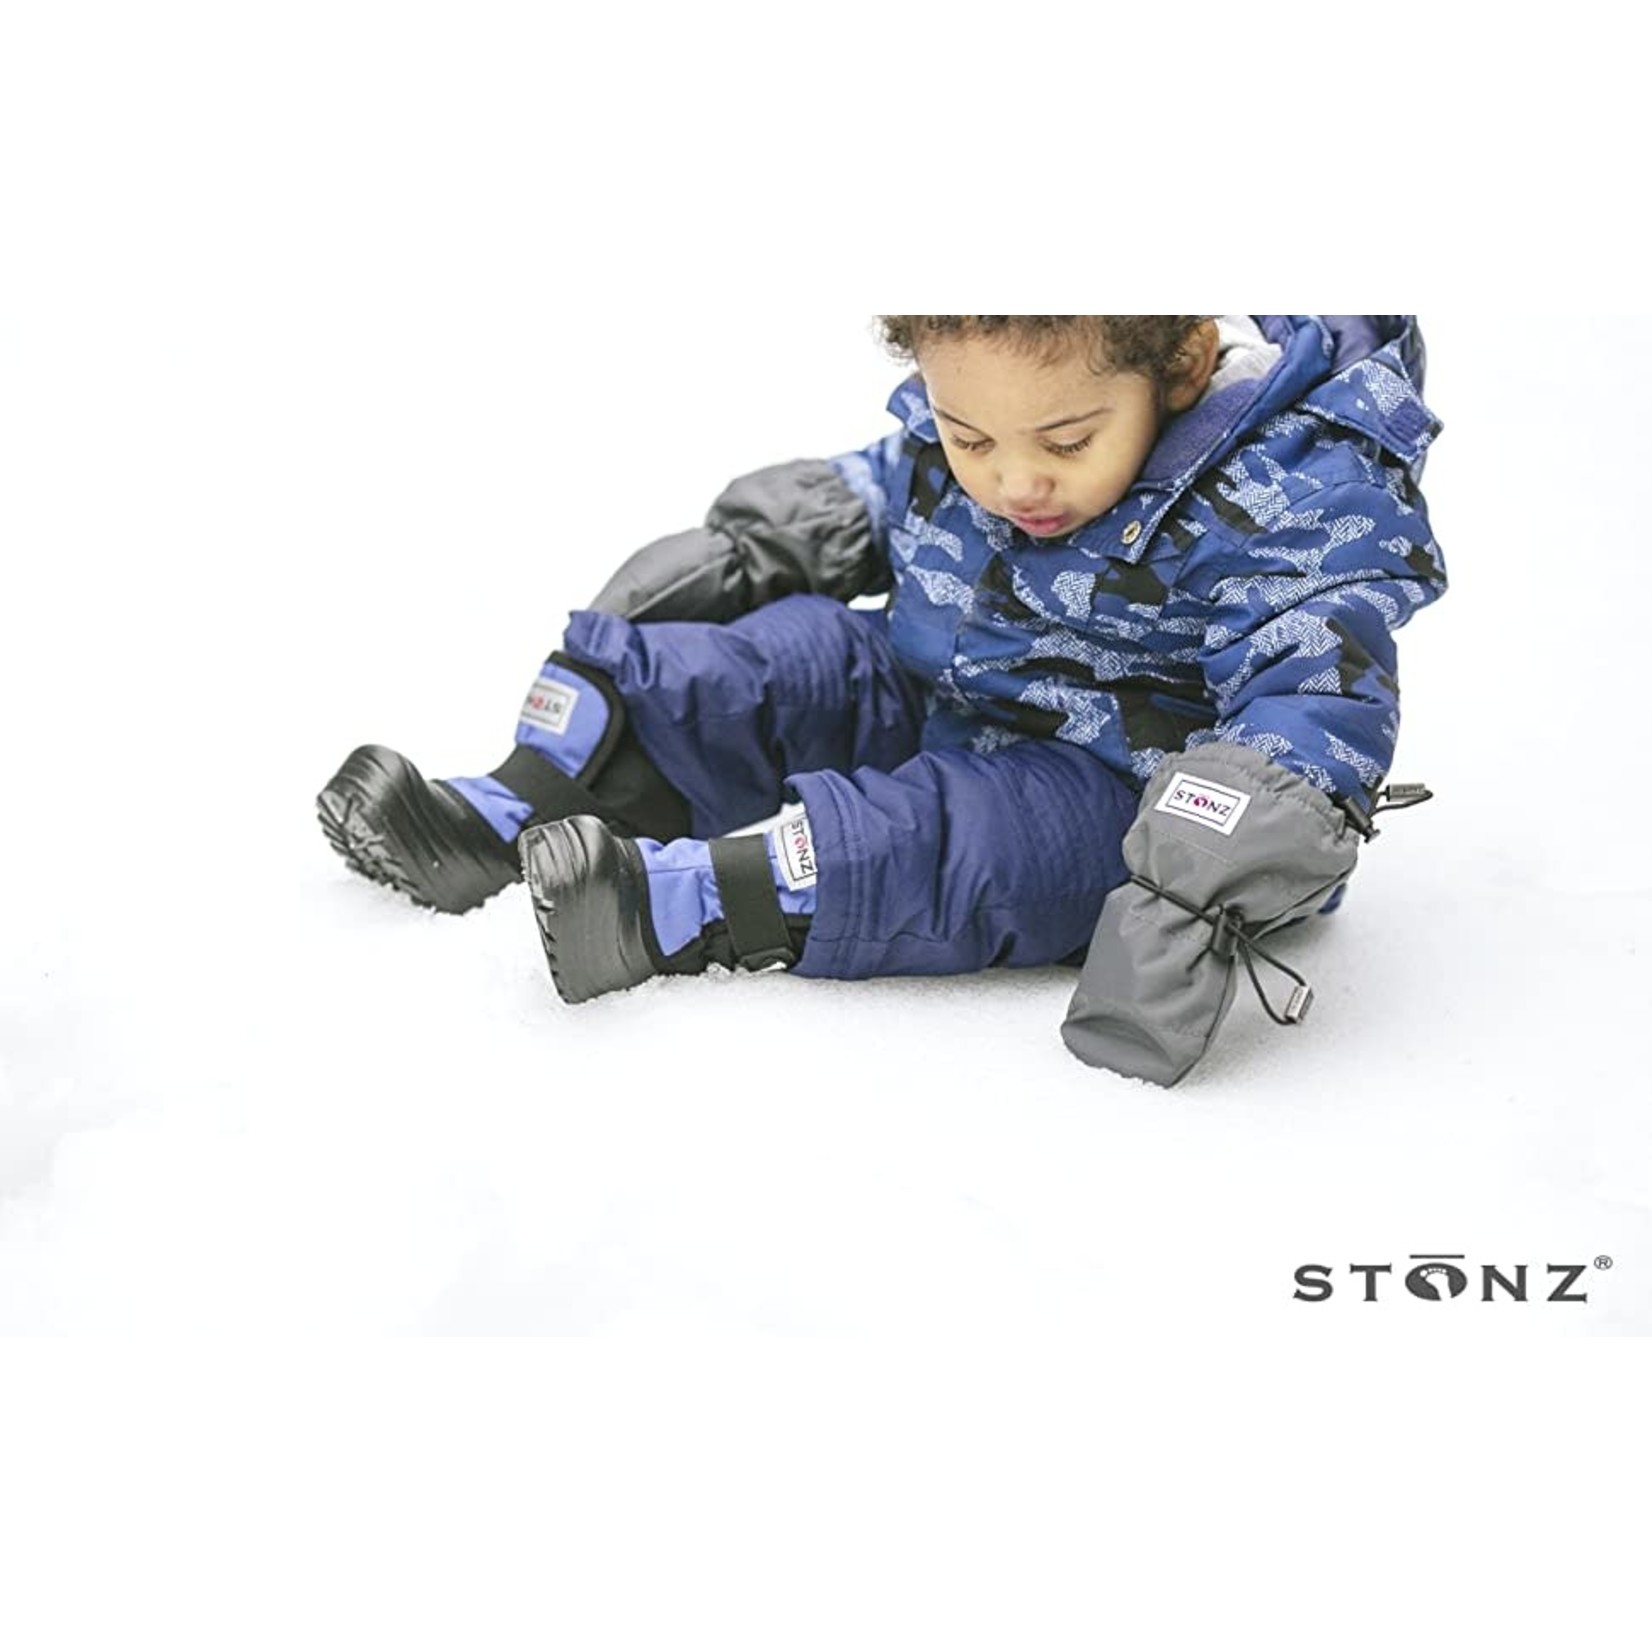 Stonz STONZ - Mitaines d'hiver pour bébé doublées de polar 'Grey'